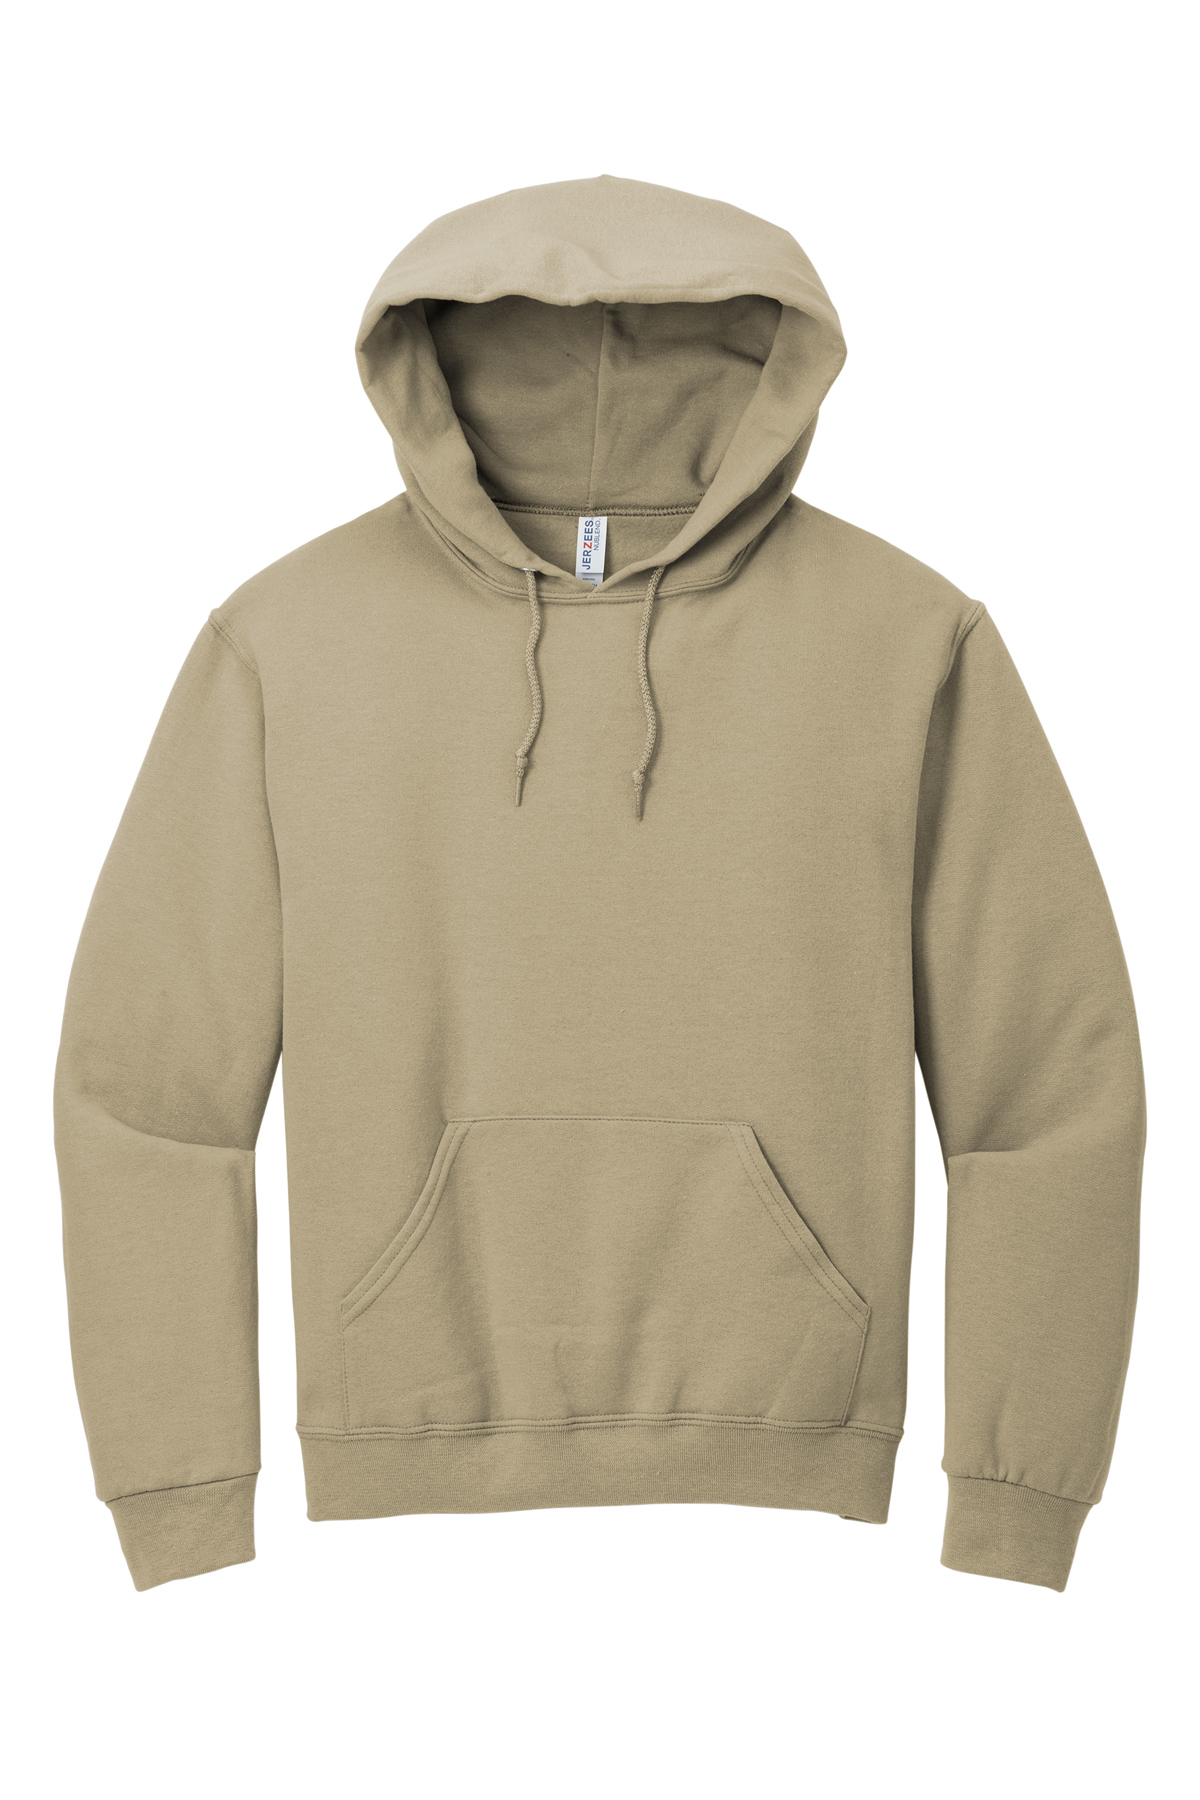 Pullover Product | | Jerzees Sweatshirt Hooded SanMar - NuBlend